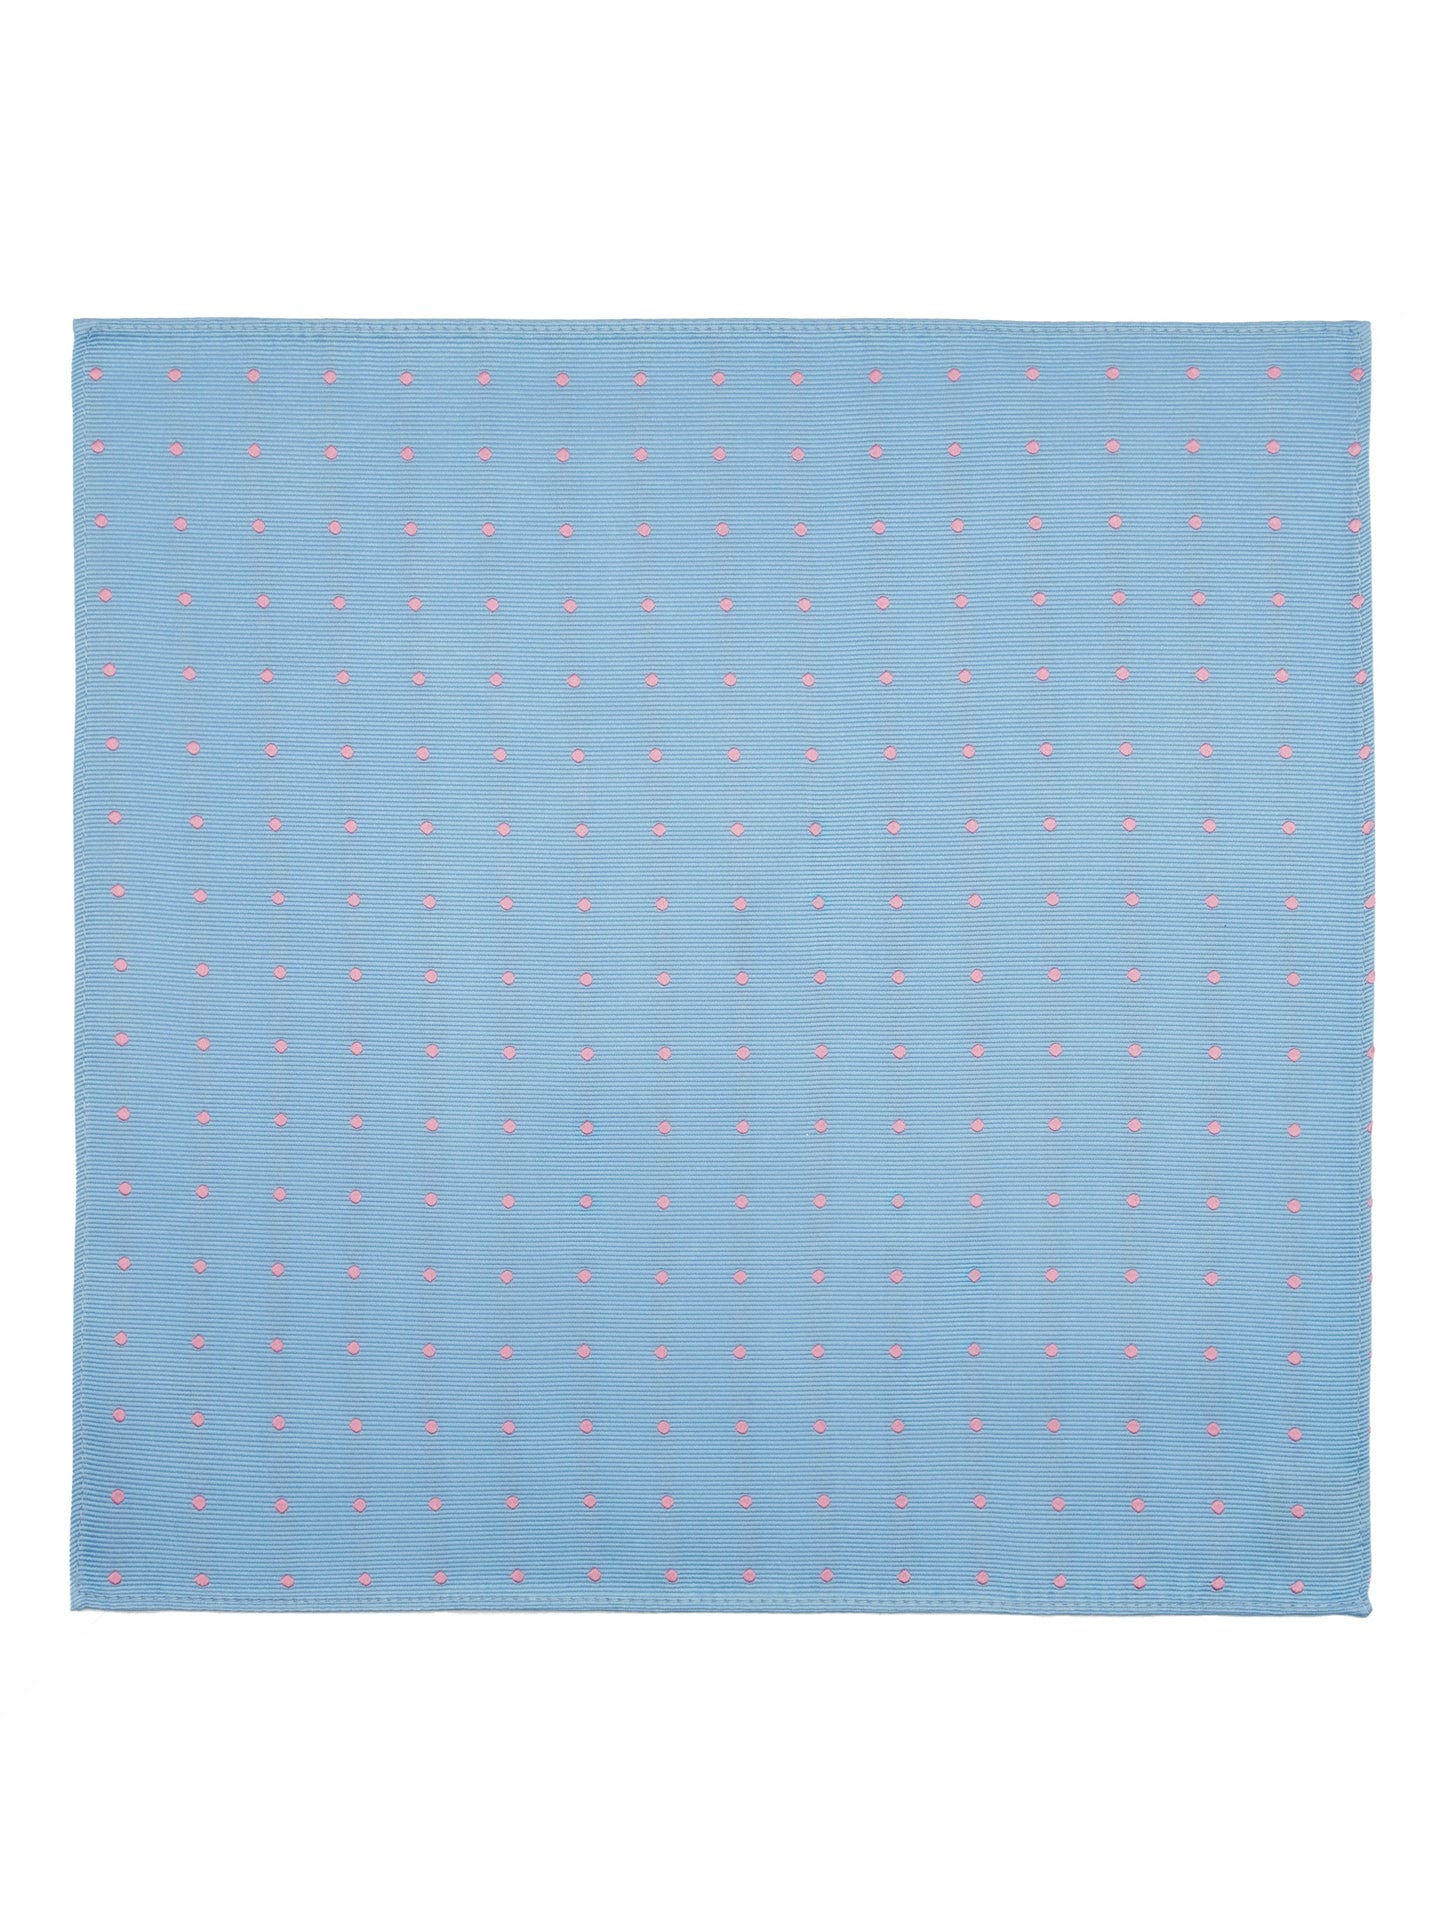 Silk Handkerchiefs, Polka Dot - Light Blue